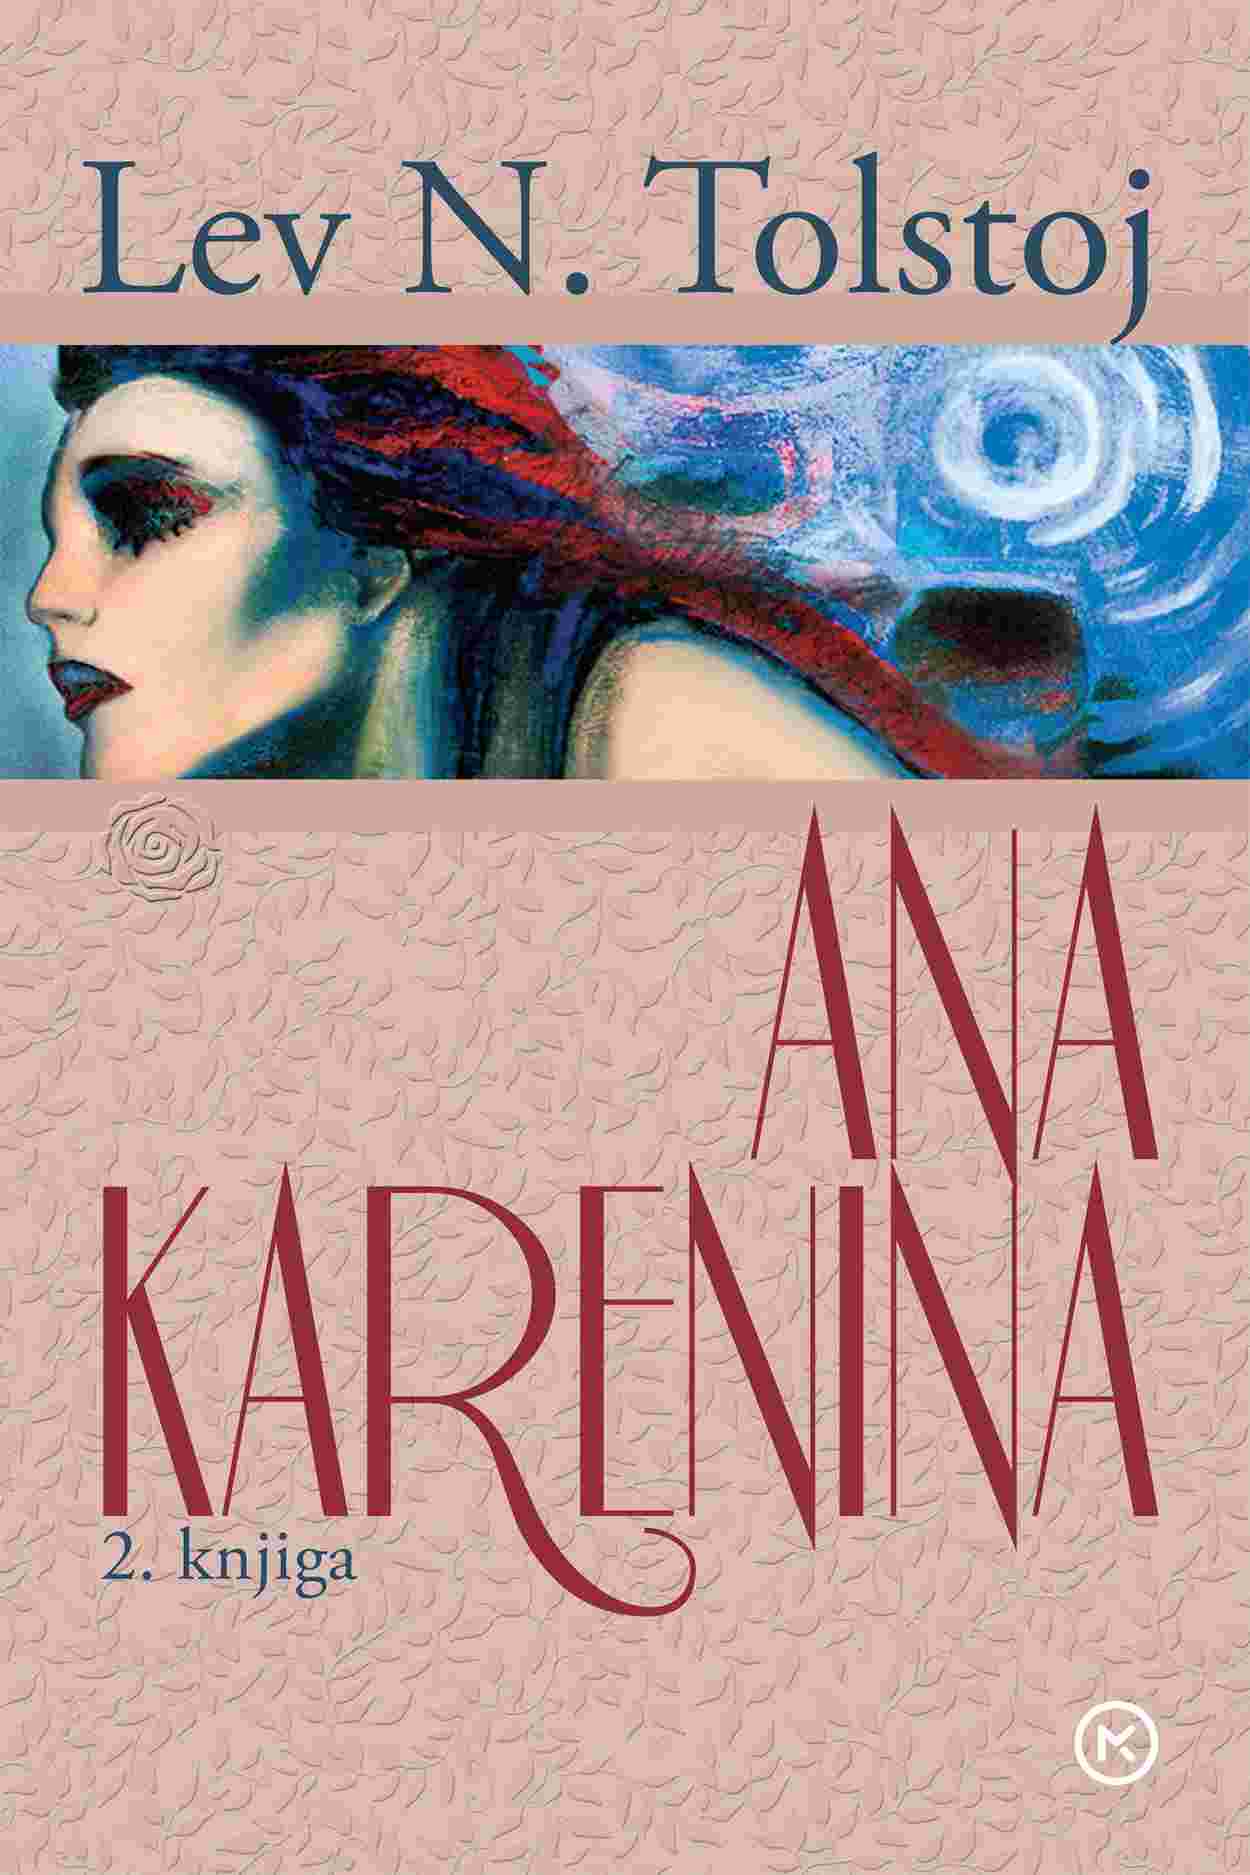 Ana Karenina, 2. knjiga